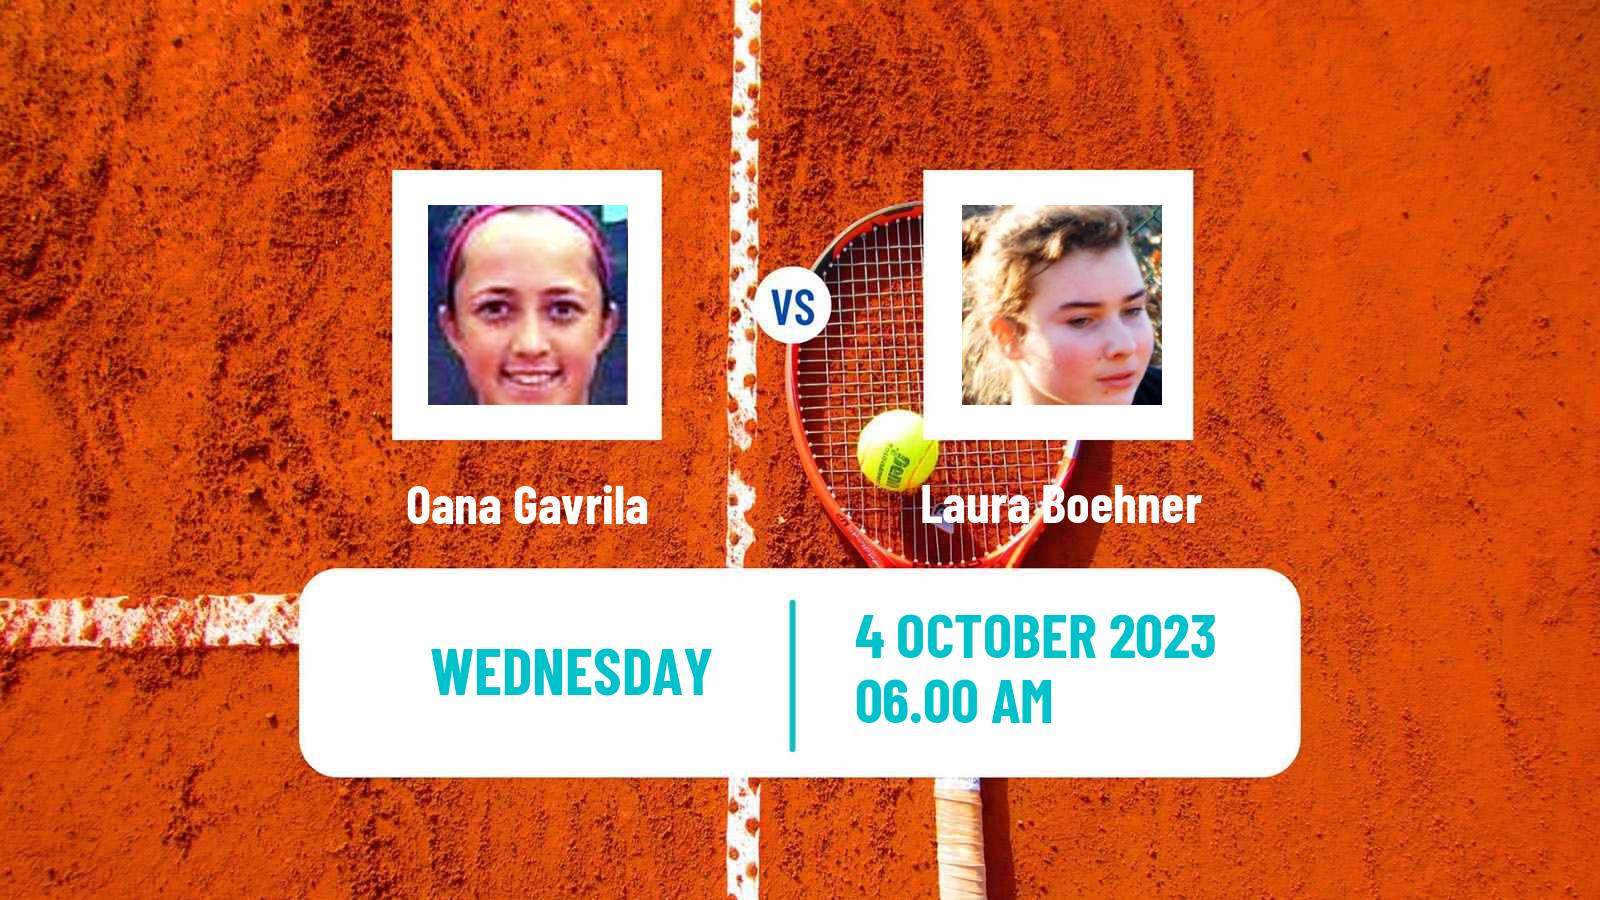 Tennis ITF W15 Monastir 35 Women Oana Gavrila - Laura Boehner